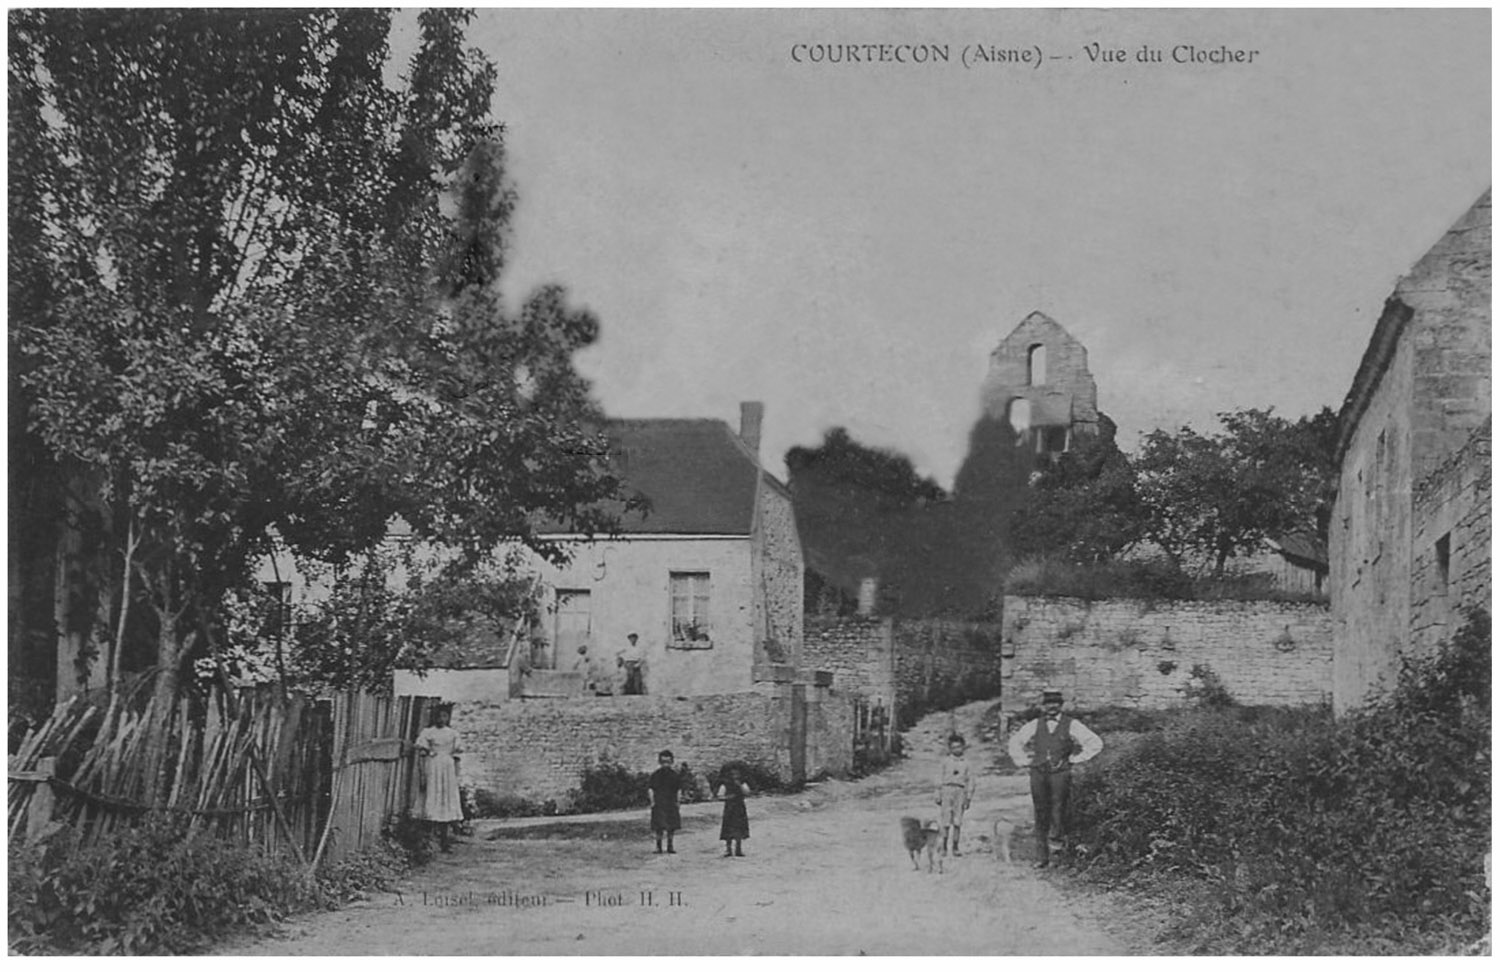 26a - Aisne - Village de Courtecon .jpg